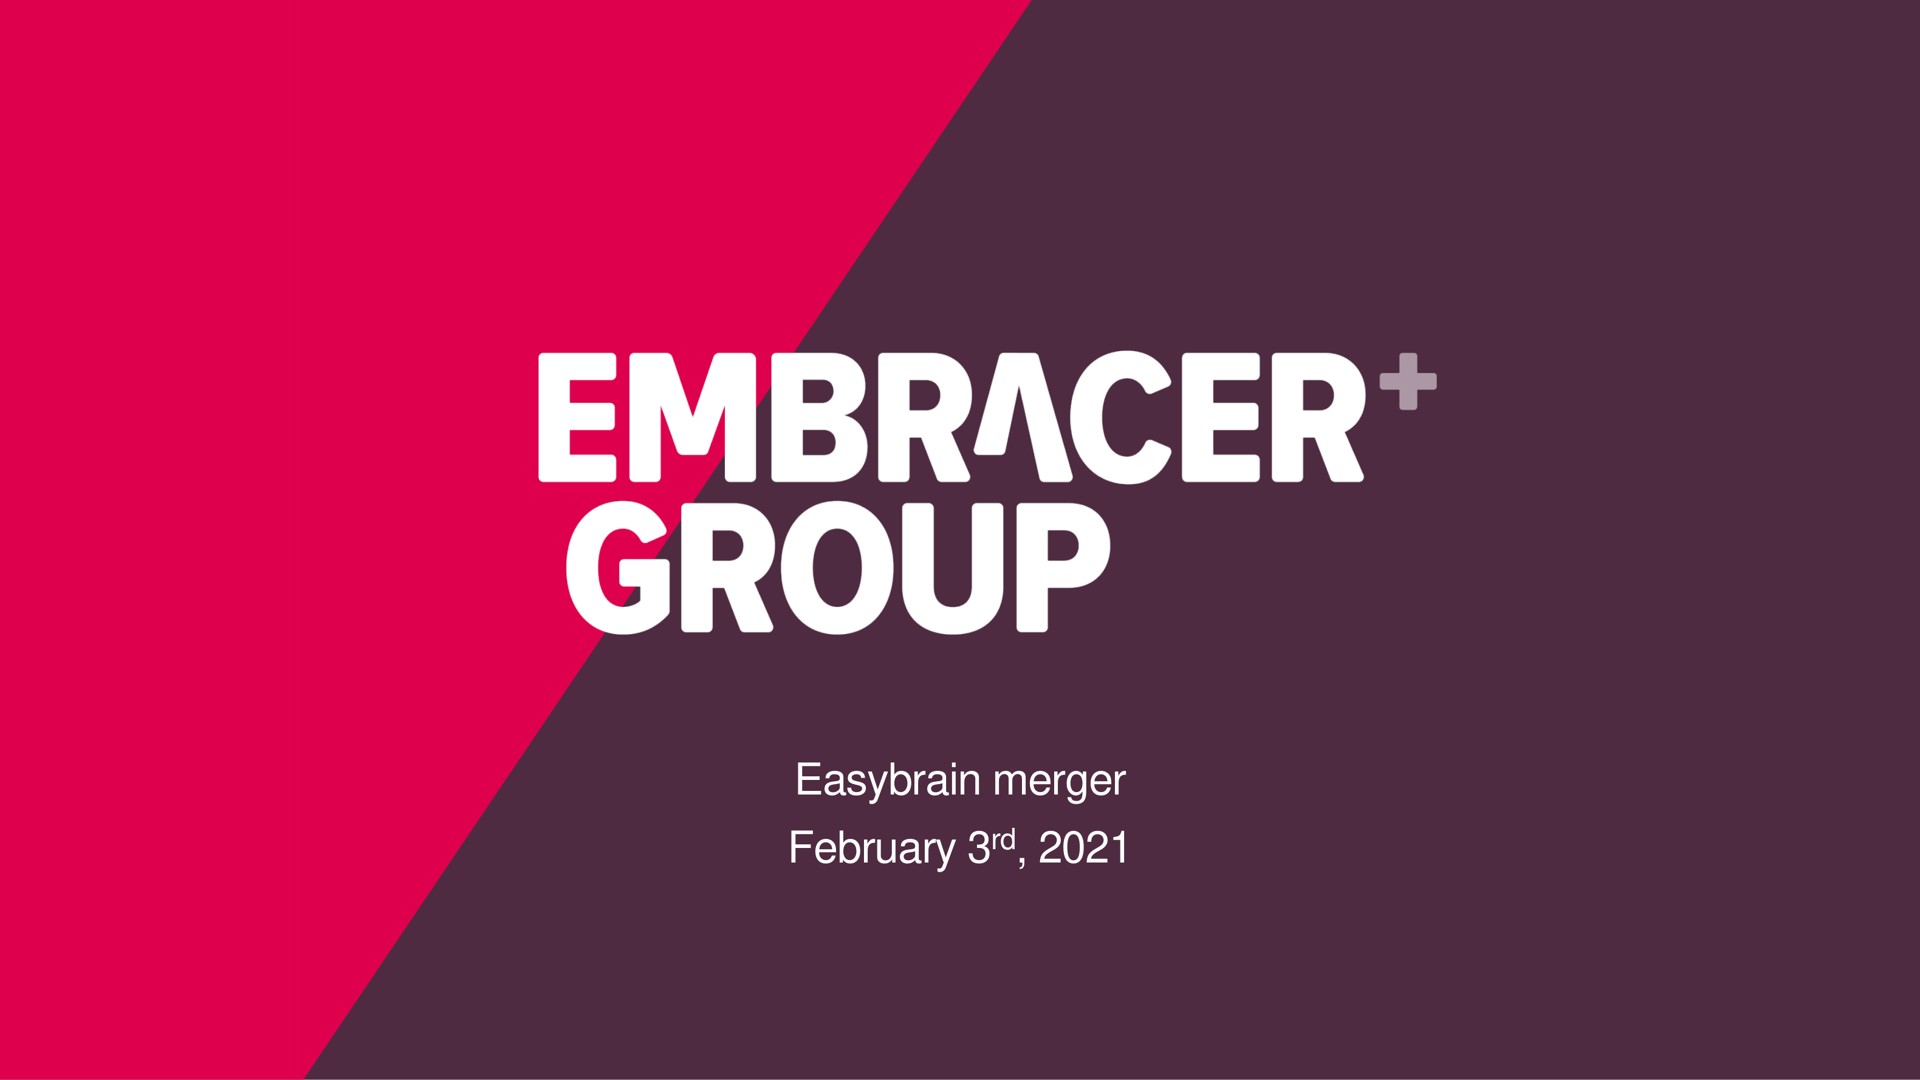 merger embracer group | Embracer Group